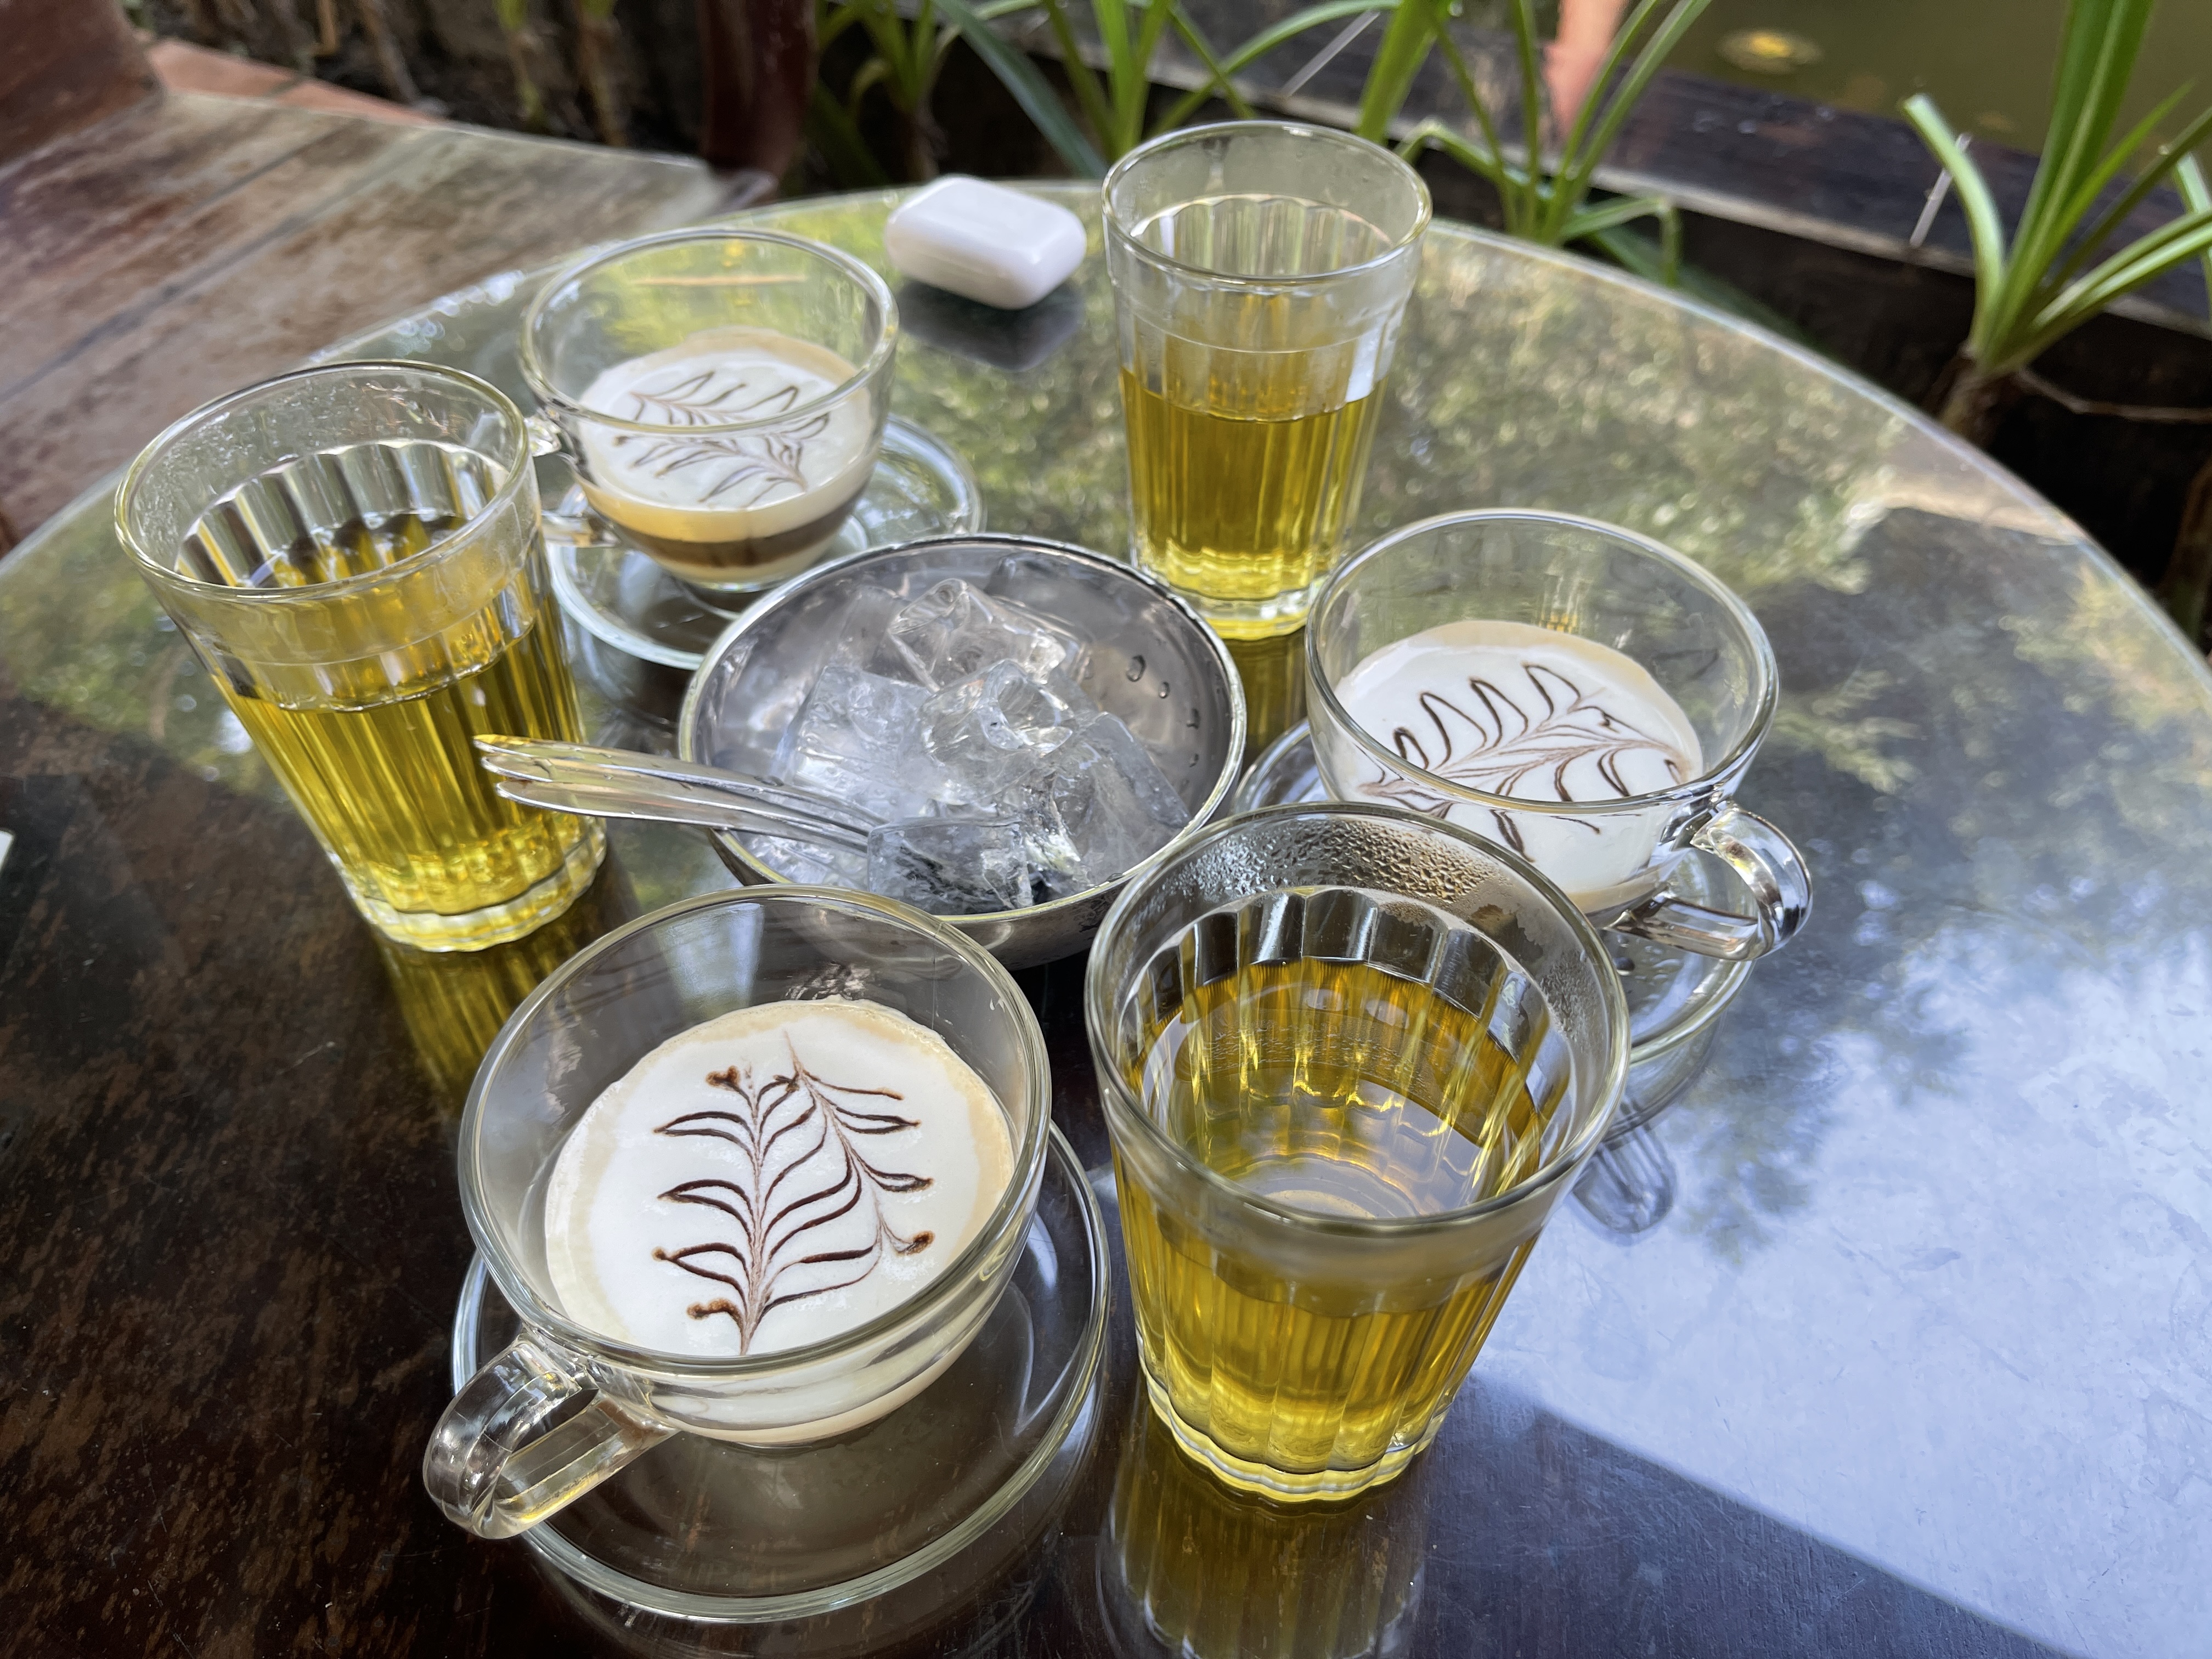 ‘Cà phê muối' is served at Đại Nam Thái Y Viện Cafe on Doan Thi Diem Street, Hue City, Vietnam. Photo: Dong Nguyen / Tuoi Tre News